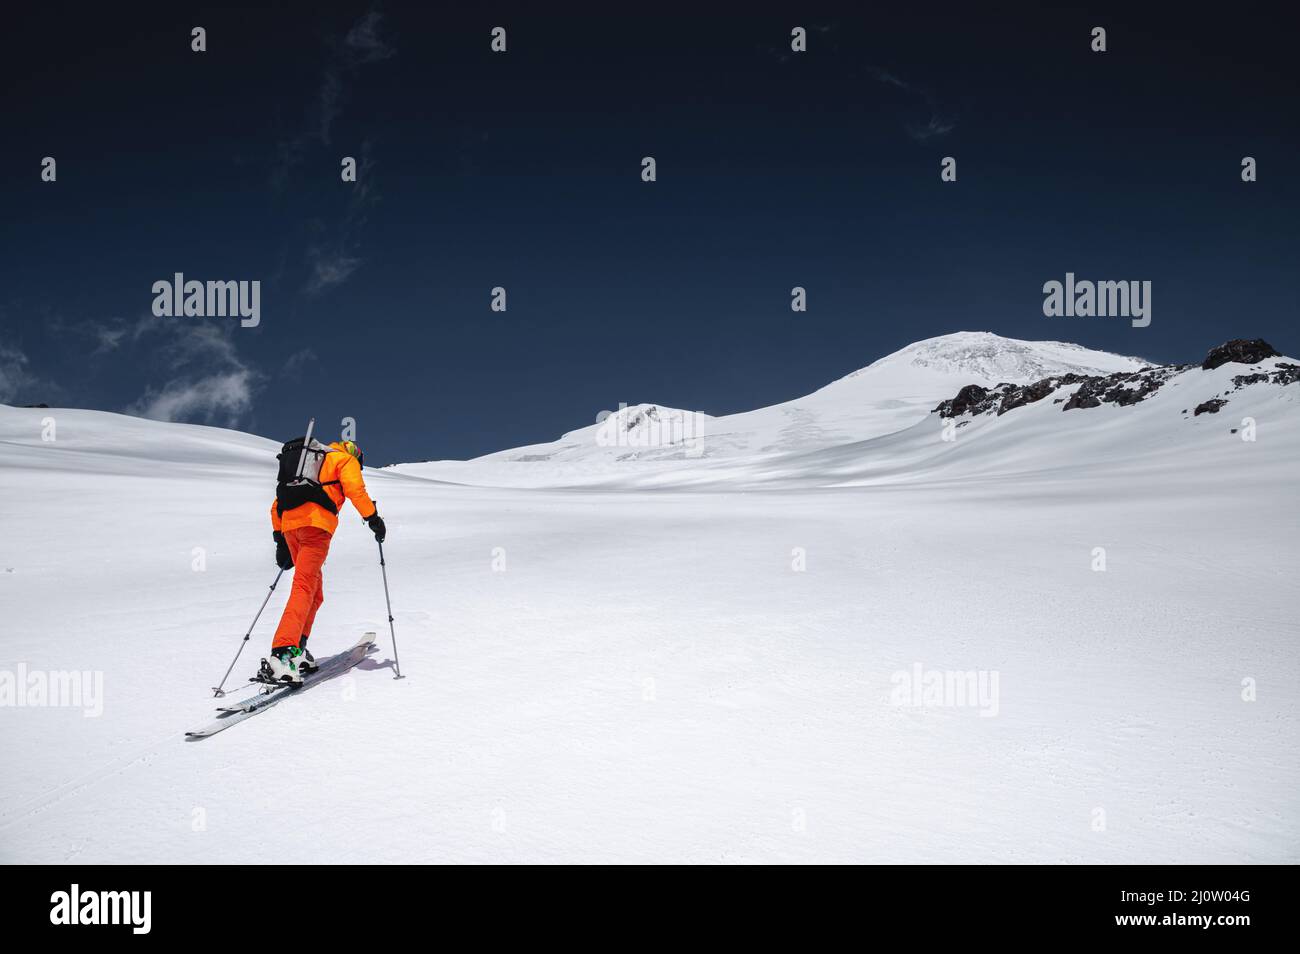 Ein Skifahrer in einem orangefarbenen Anzug Ski in einem Berg abseits der Piste Skifahren im nördlichen kaukasus des Mount Elbrus Stockfoto